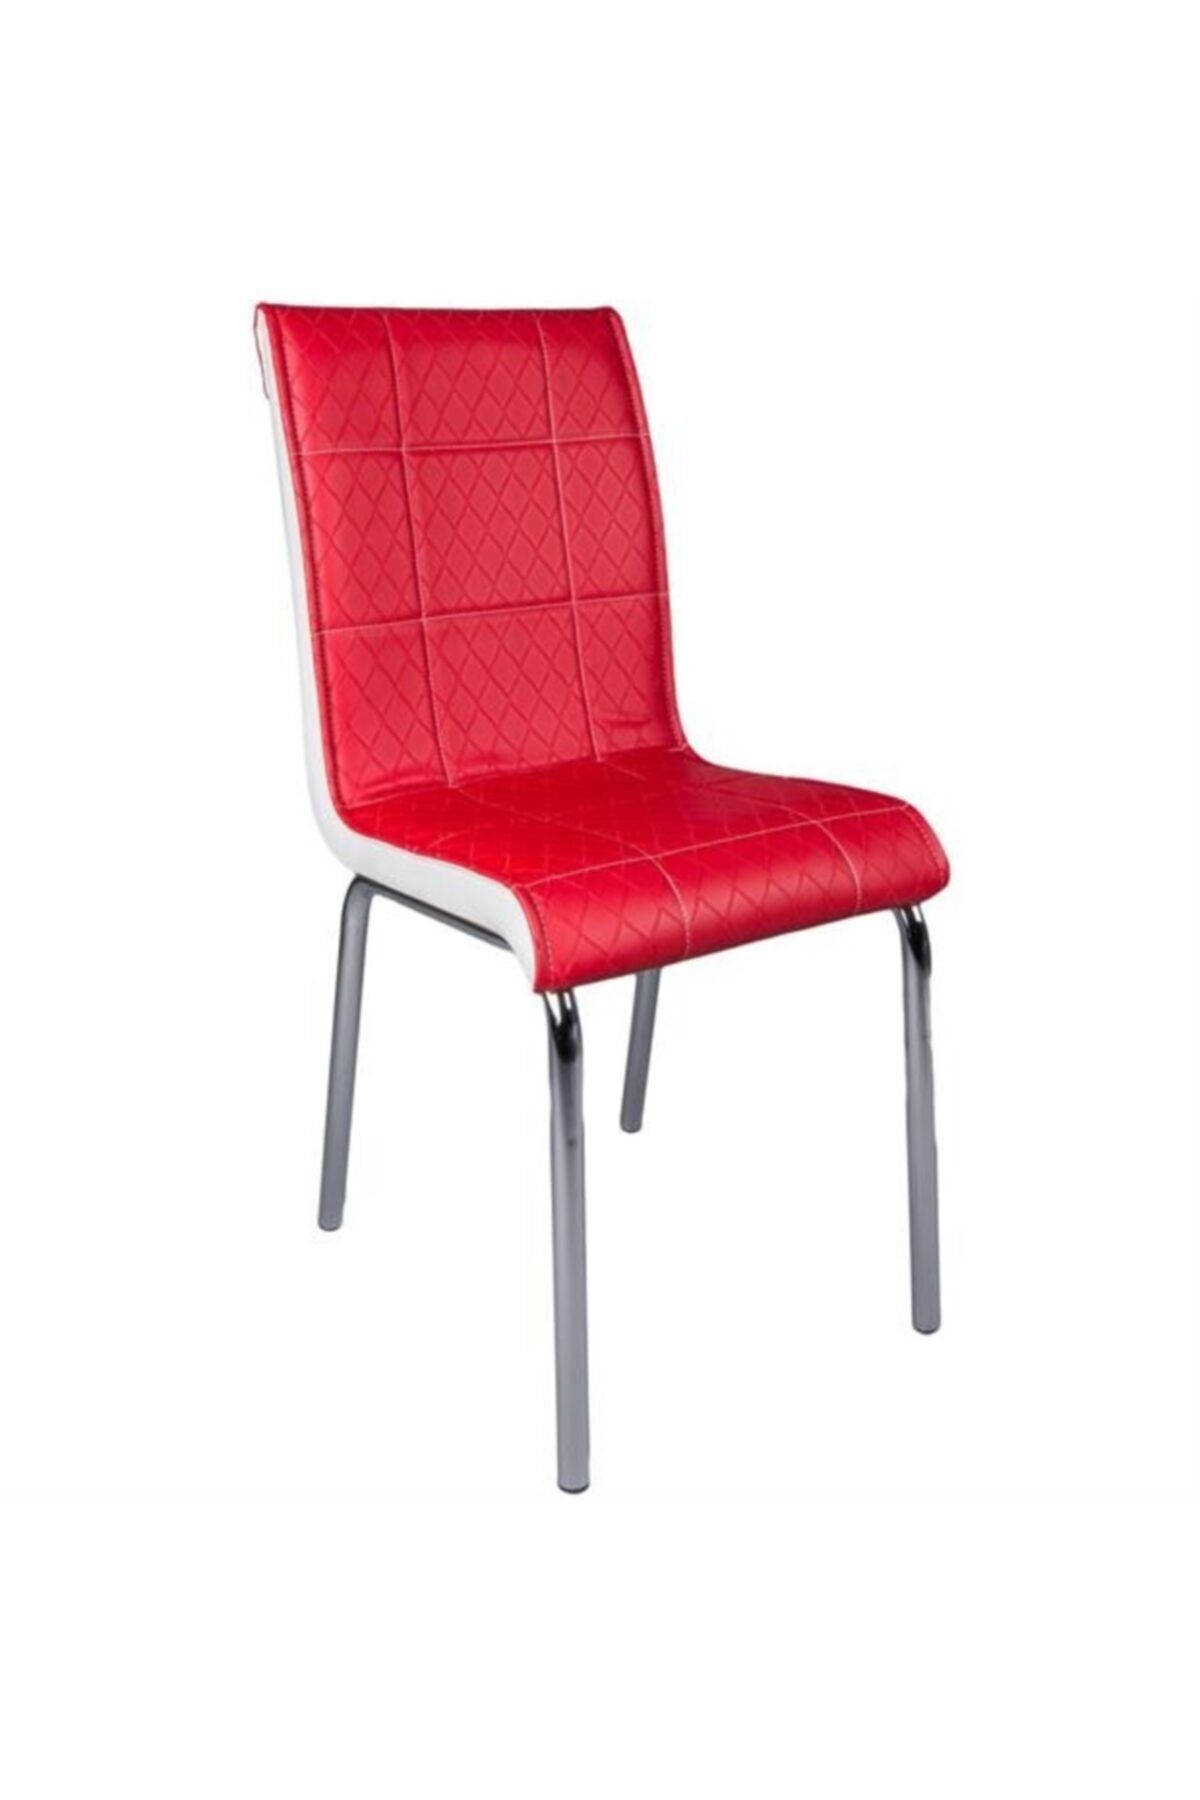 Evistro Paslanmaz Krom Ayaklı Balkon Ve Mutfak Sandalyesi 1 Adet Kırmızı